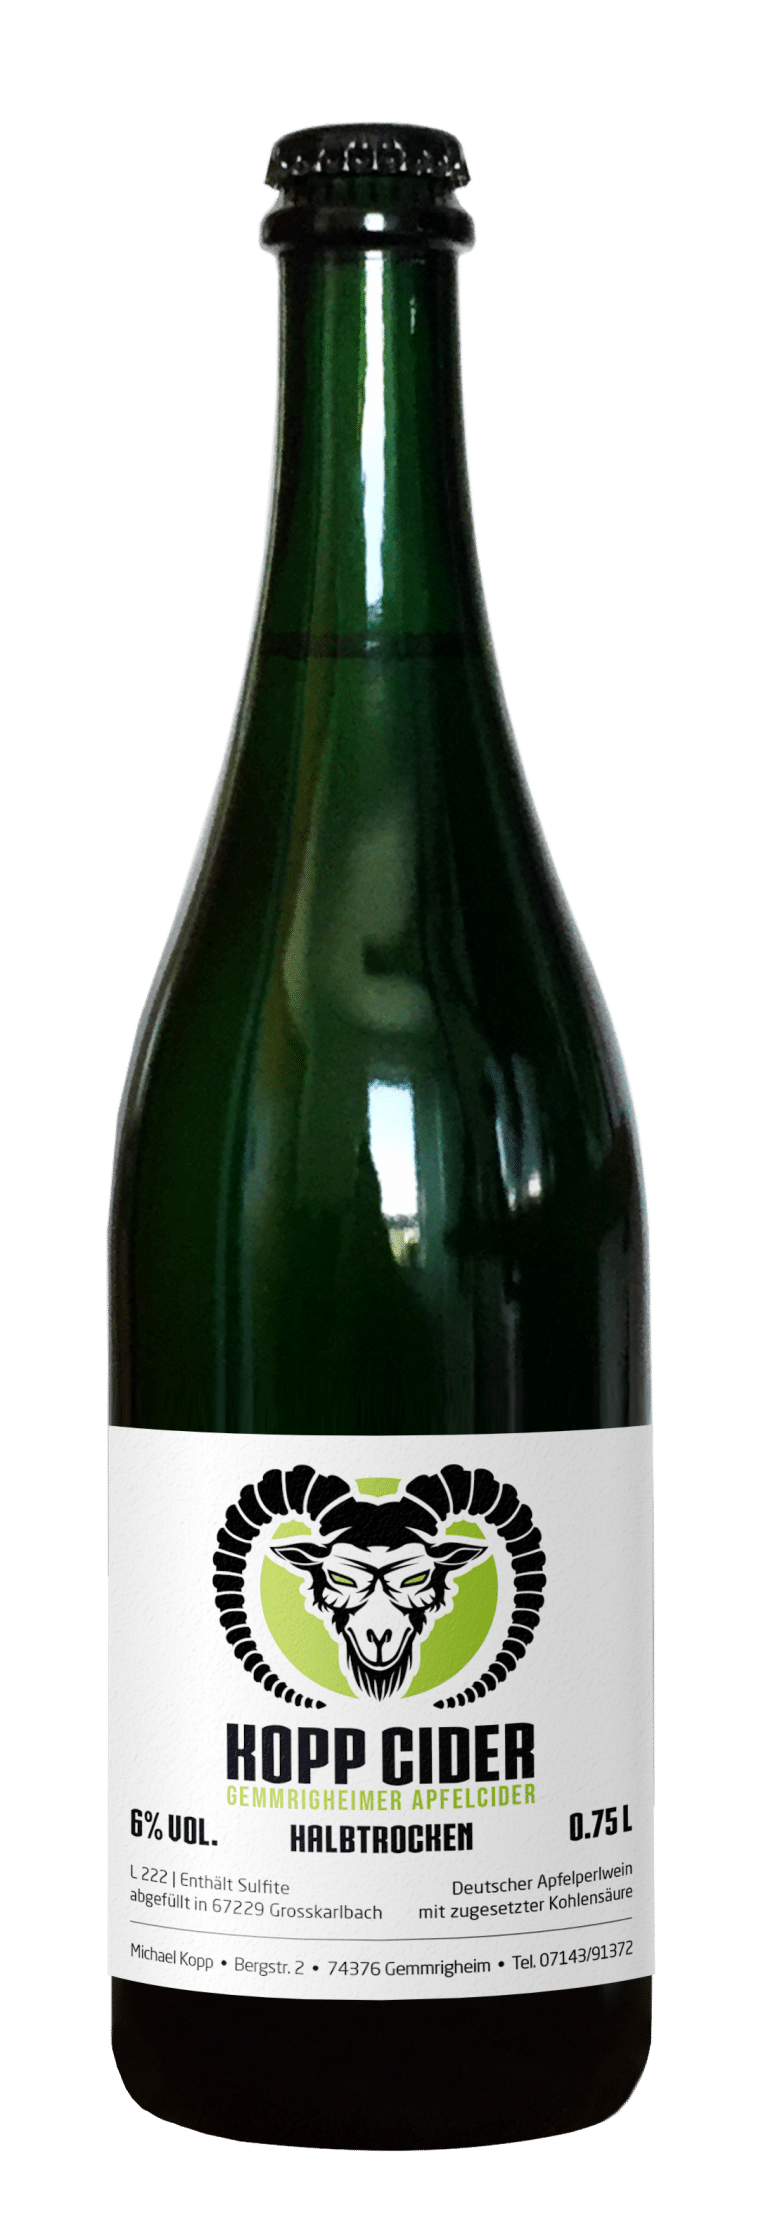 Weinbau Kopp - Onlineshop für Steillagenweine 8